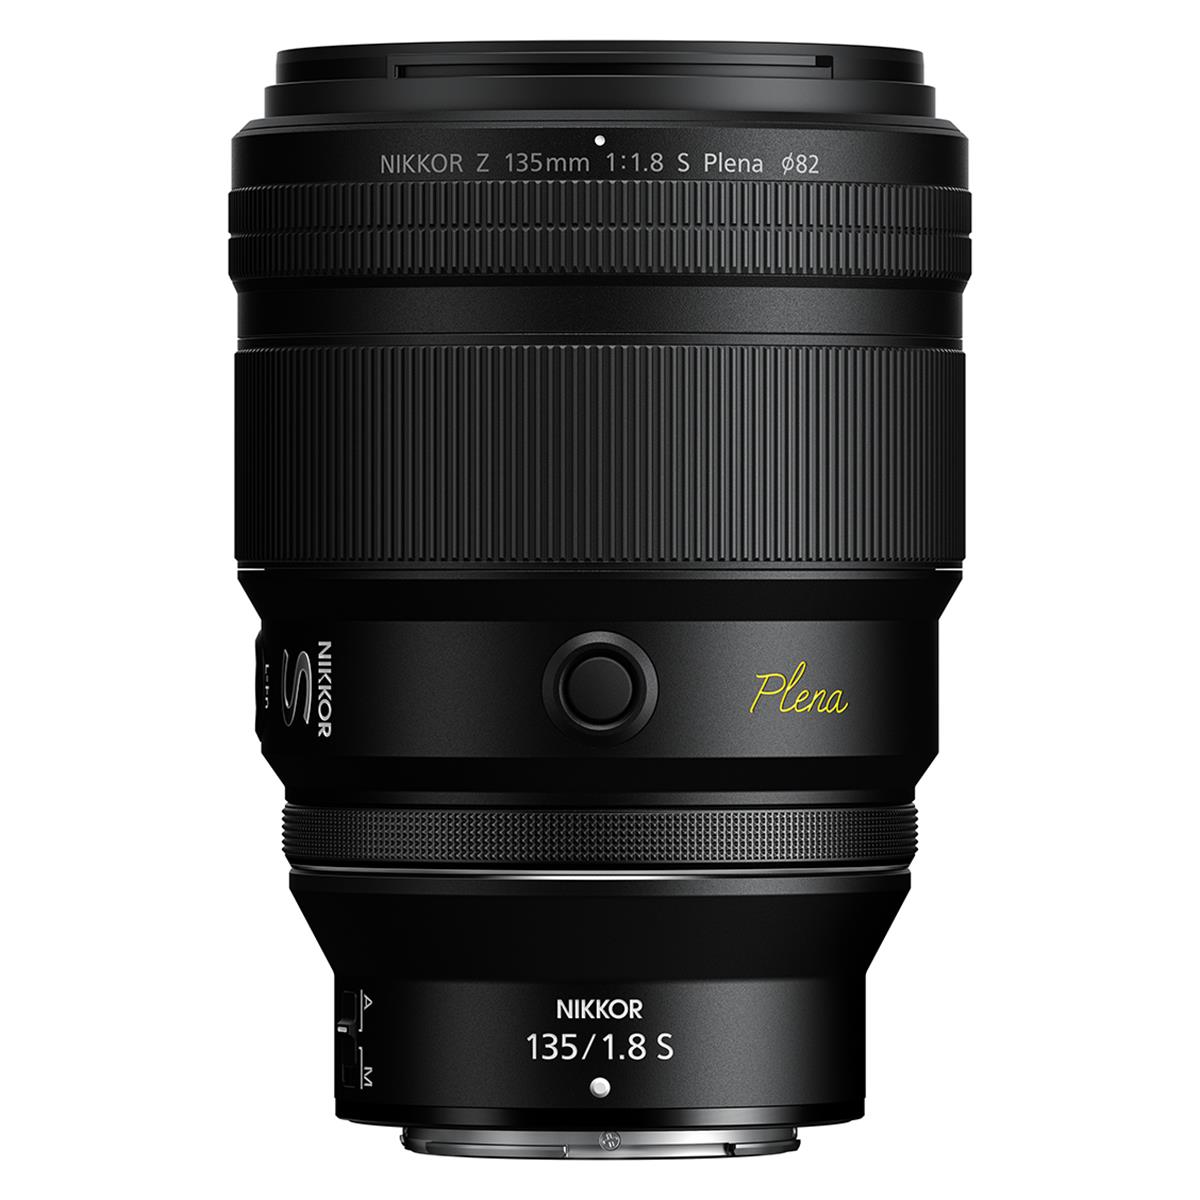 Nikon Z 135mm F1.8 S Plena Lens